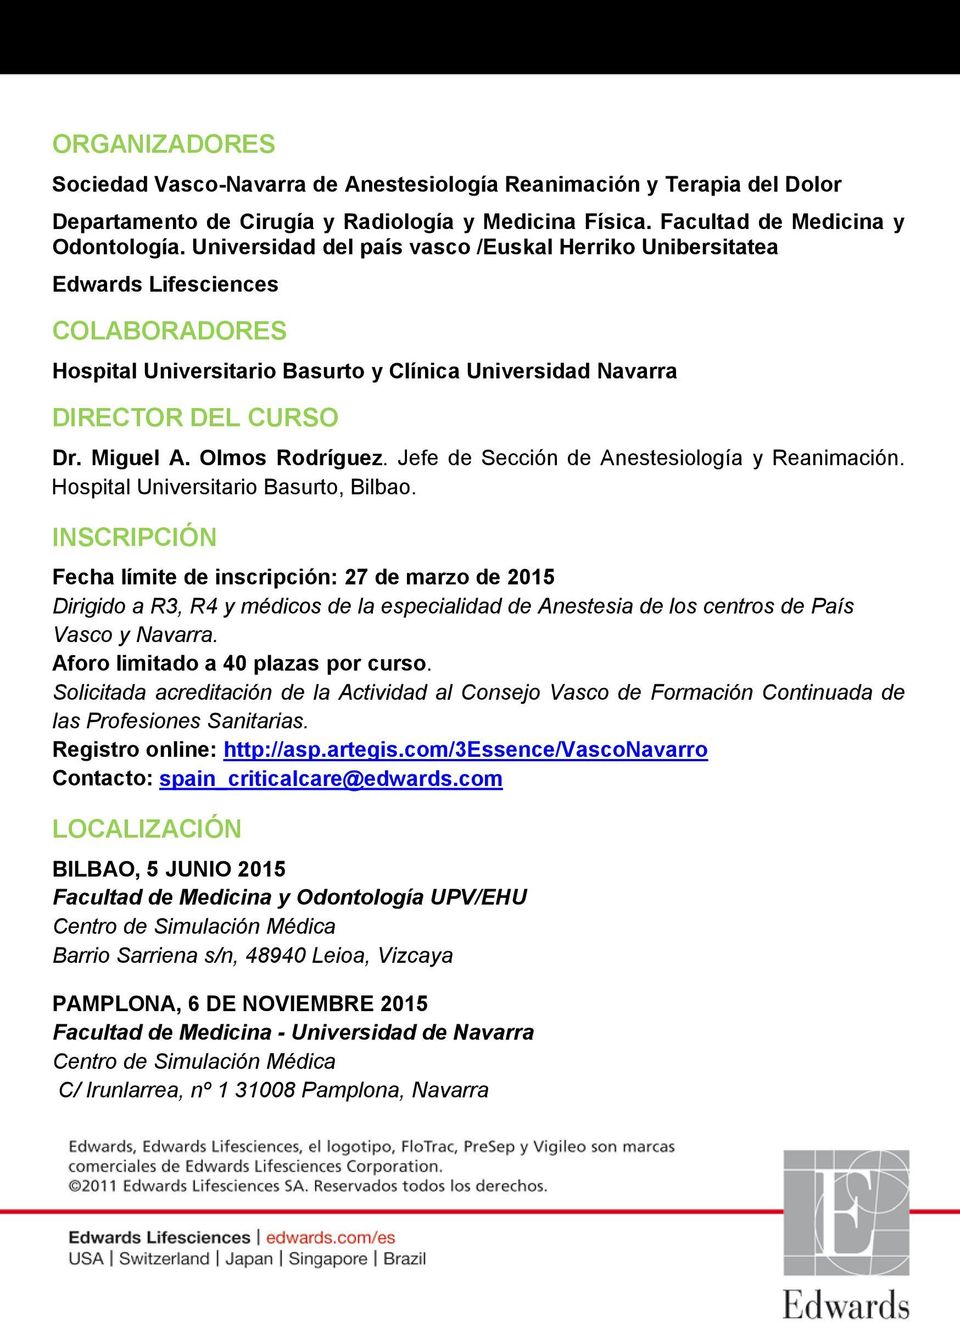 Olmos Rodríguez. Jefe de Sección de Anestesiología y Reanimación. Hospital Universitario Basurto, Bilbao.